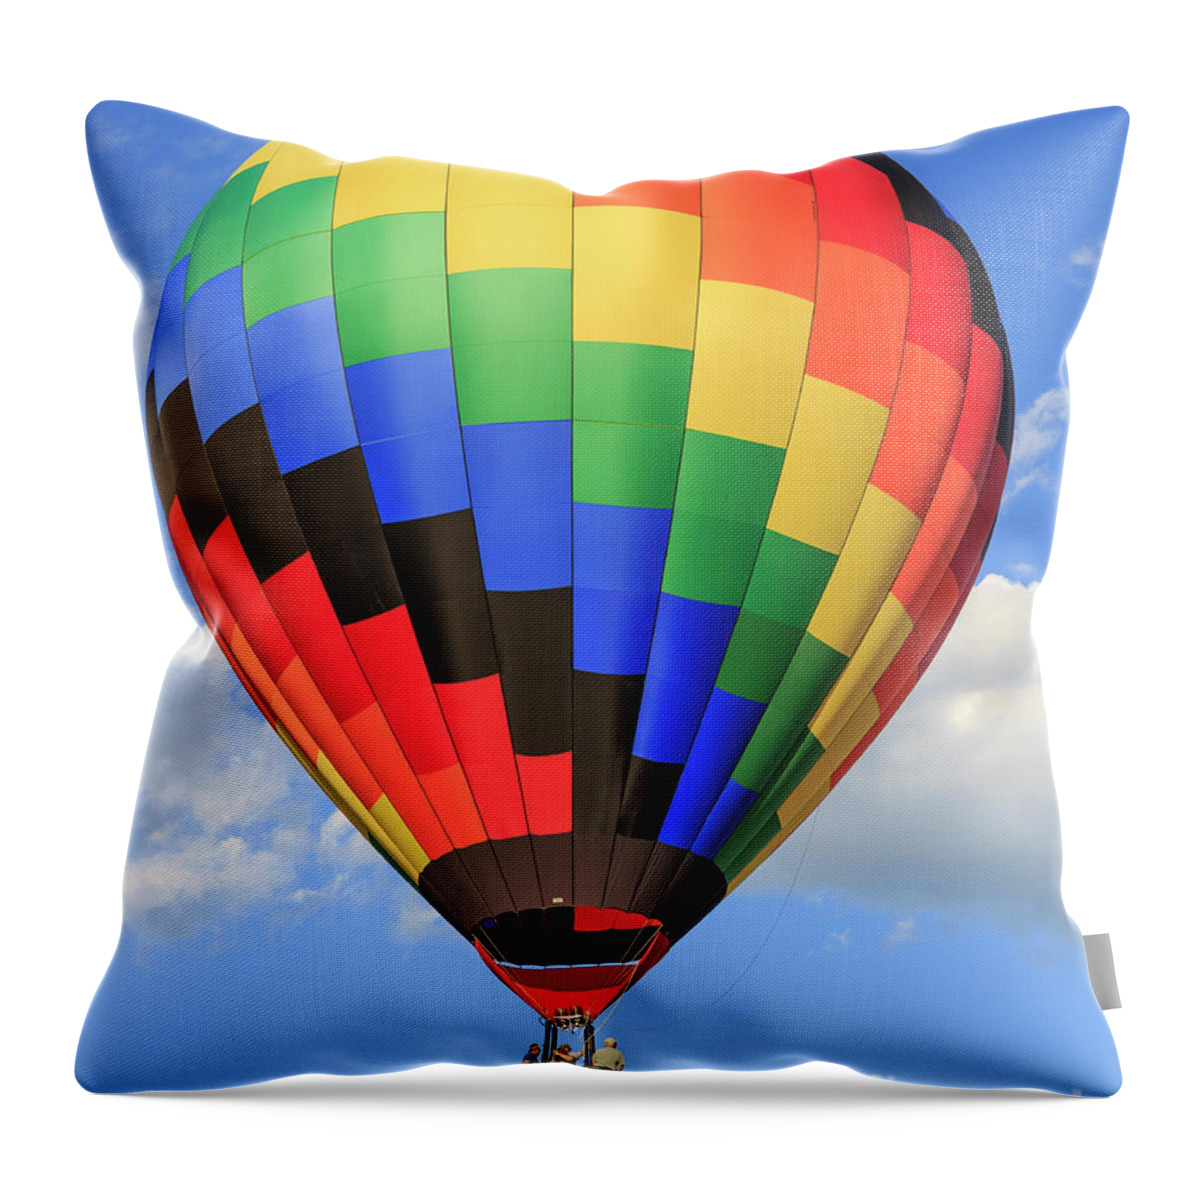 2016 Throw Pillow featuring the photograph Quechee Vermont Hot Air Balloon Fest 3 by Edward Fielding